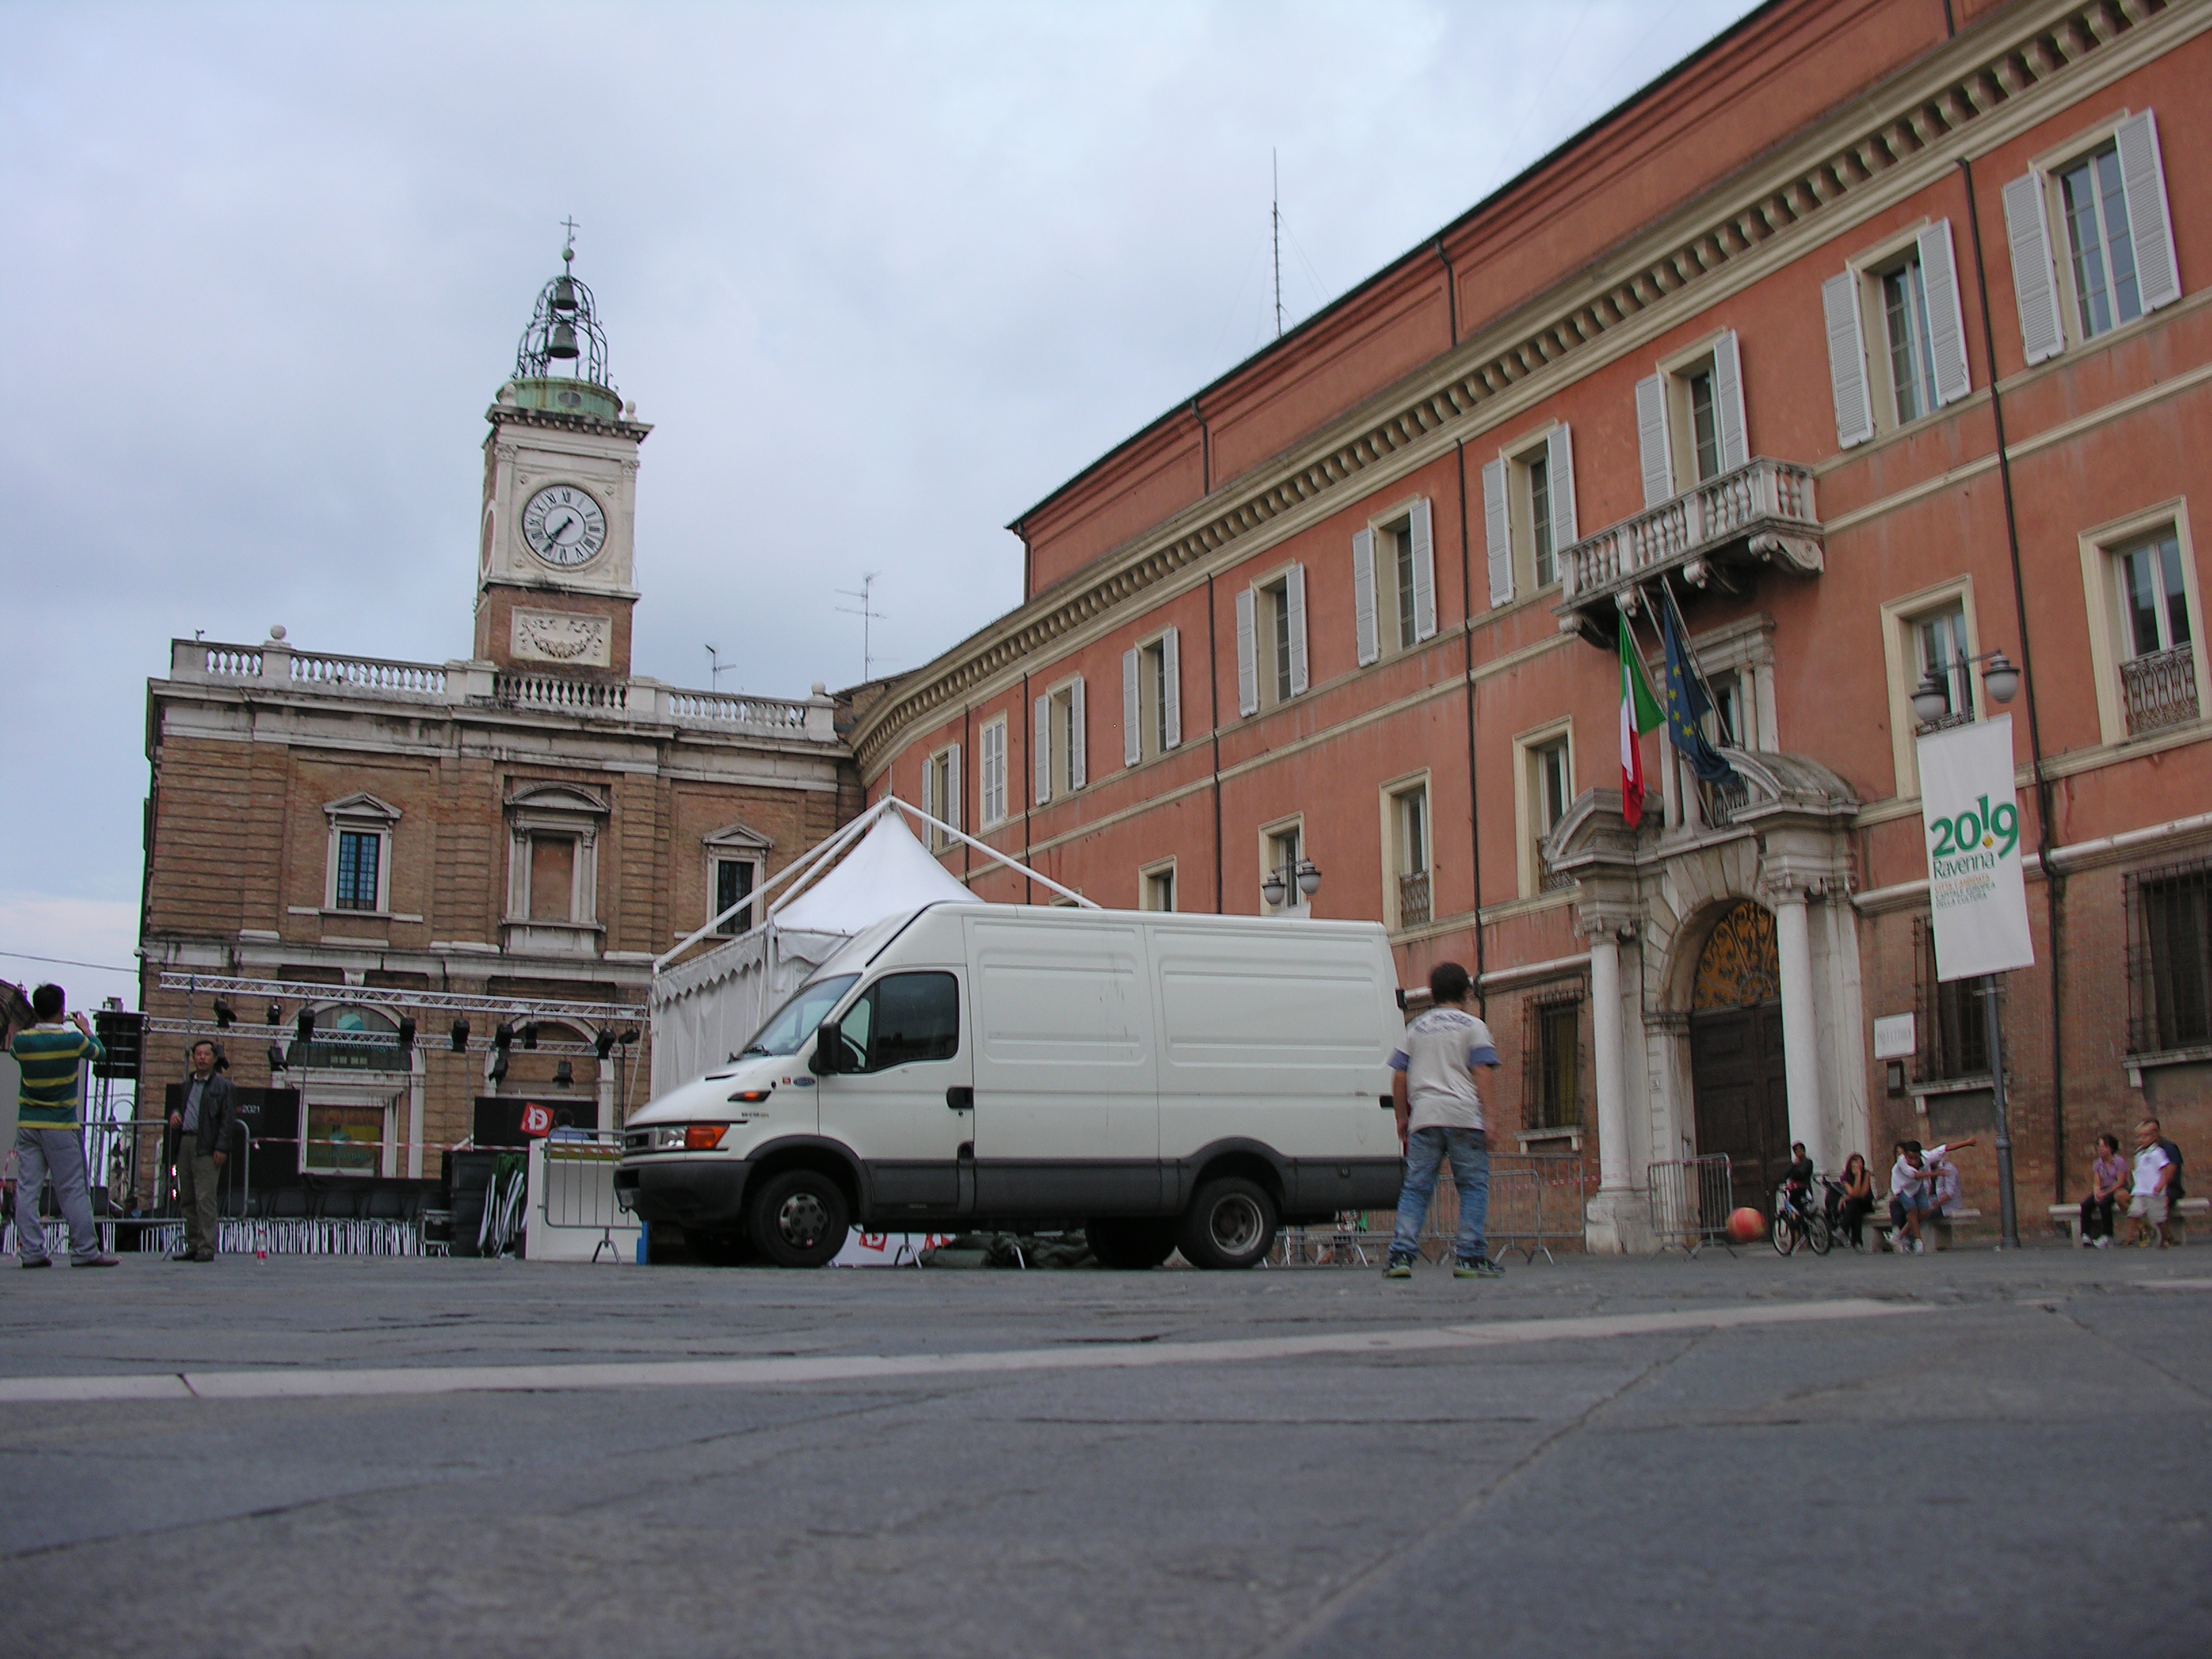 foto: https://upload.wikimedia.org/wikipedia/commons/1/15/Orologio_e_prefettura_in_piazza_del_popolo.JPG